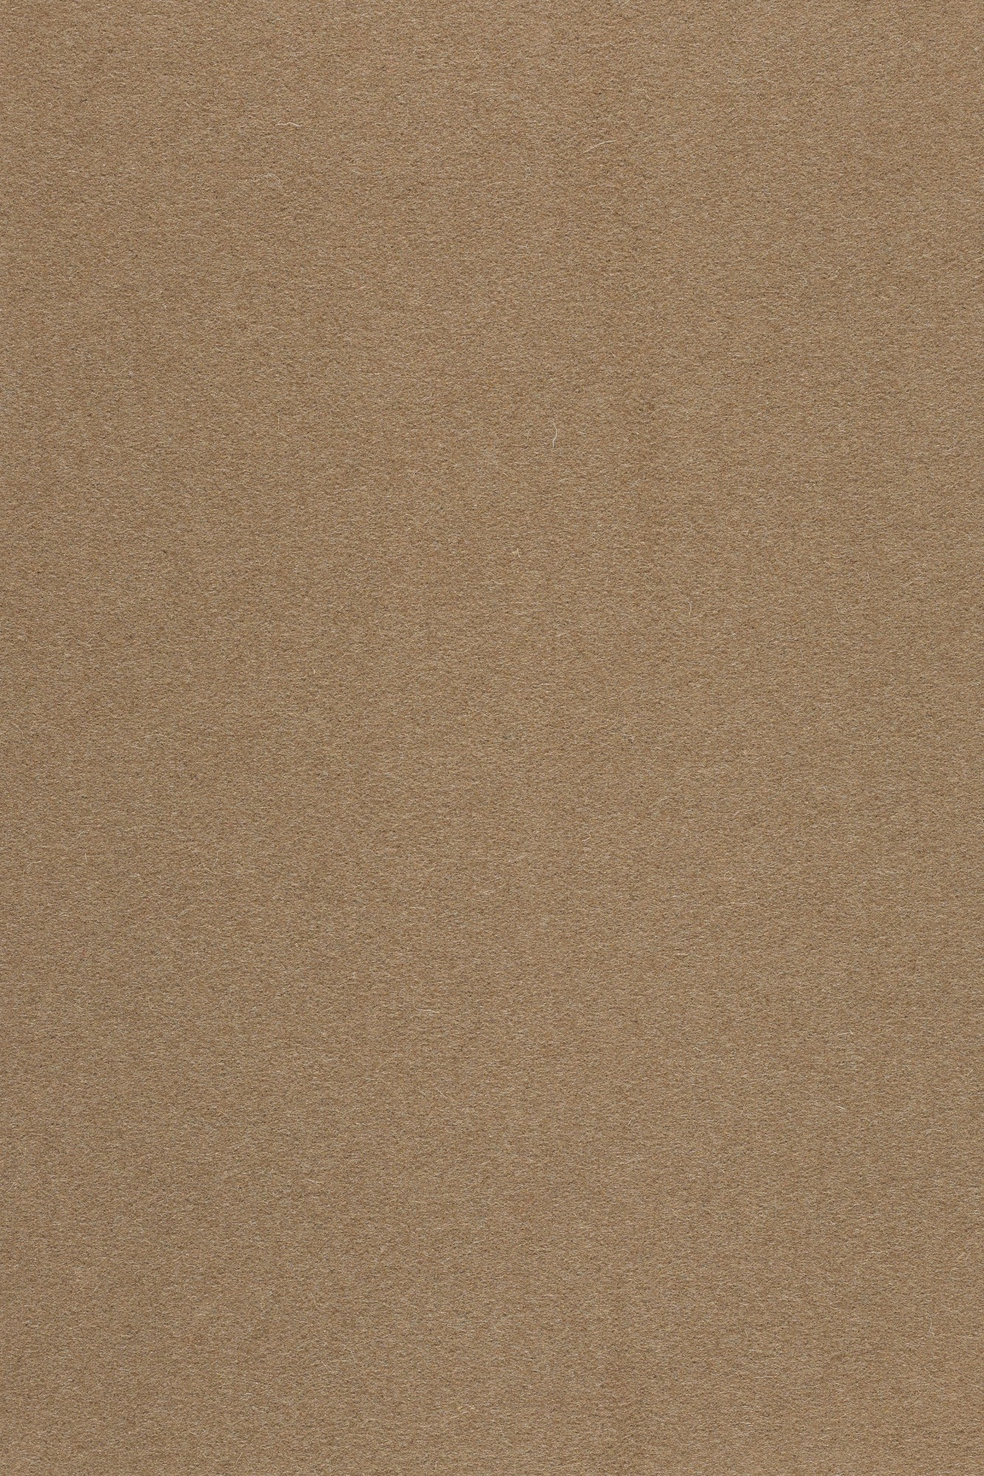 Fabric sample Divina 3 334 brown